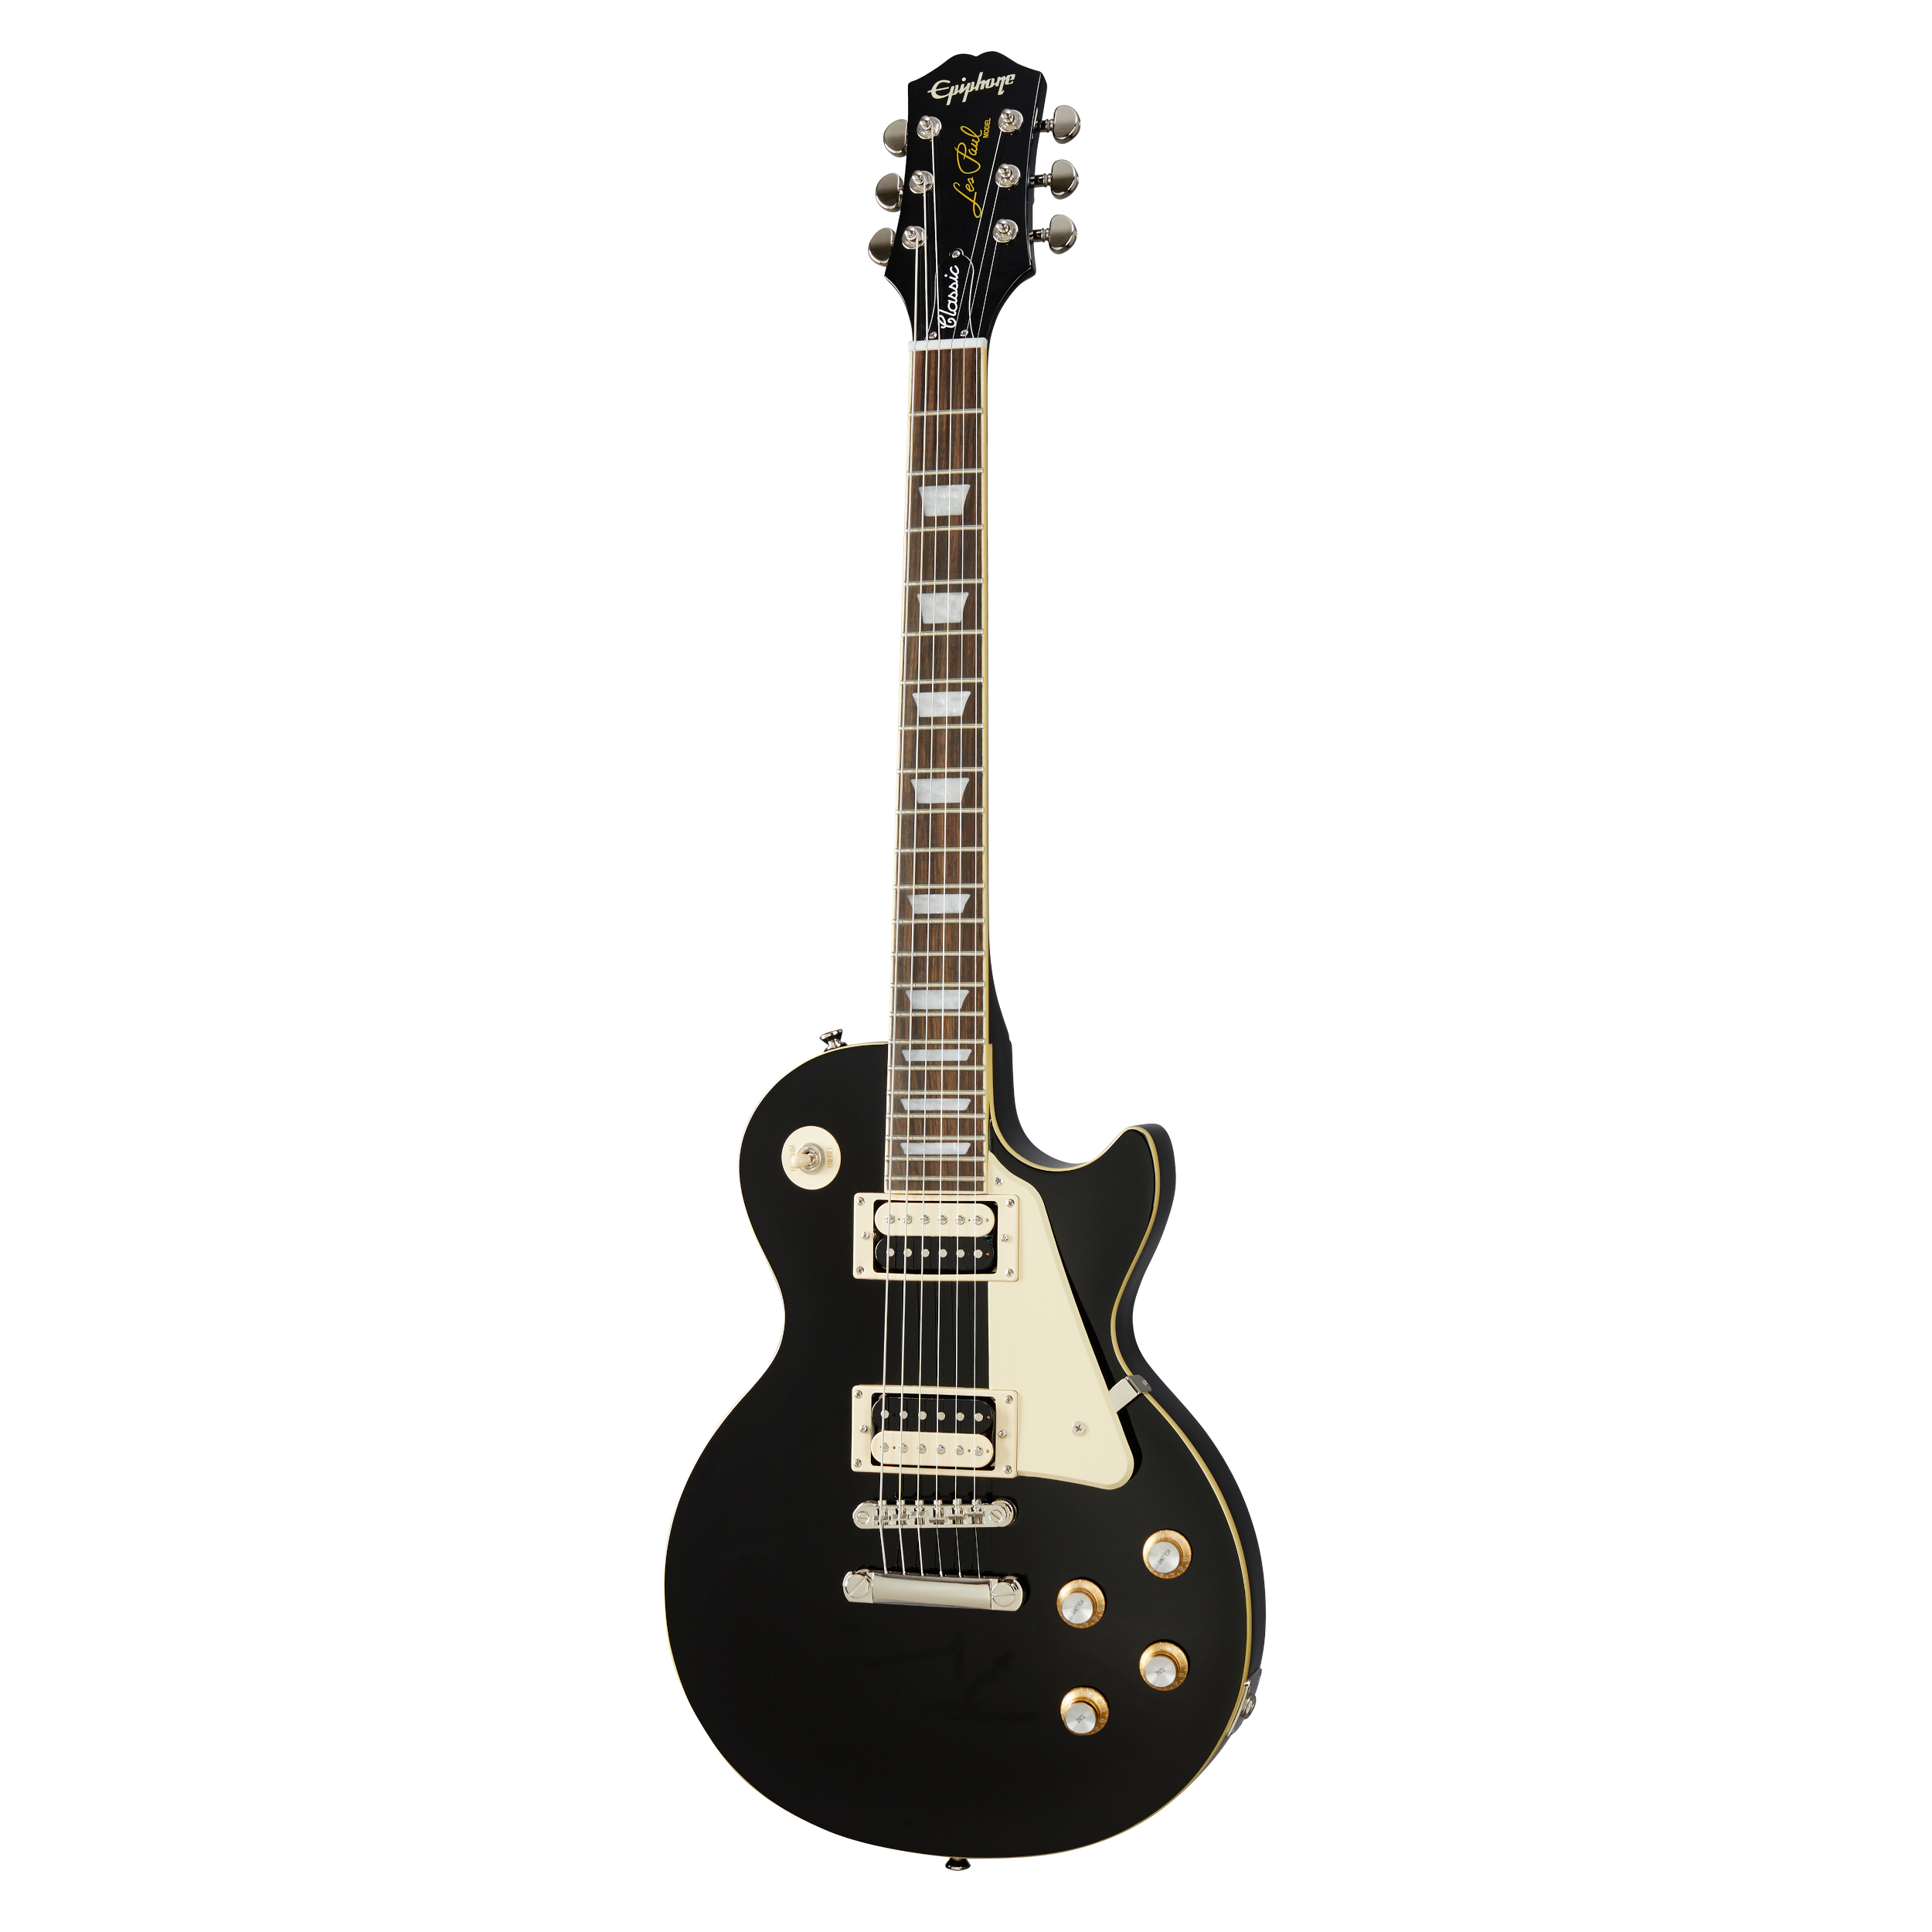 Epiphone Les Paul Classic - Ebony Black Guitar